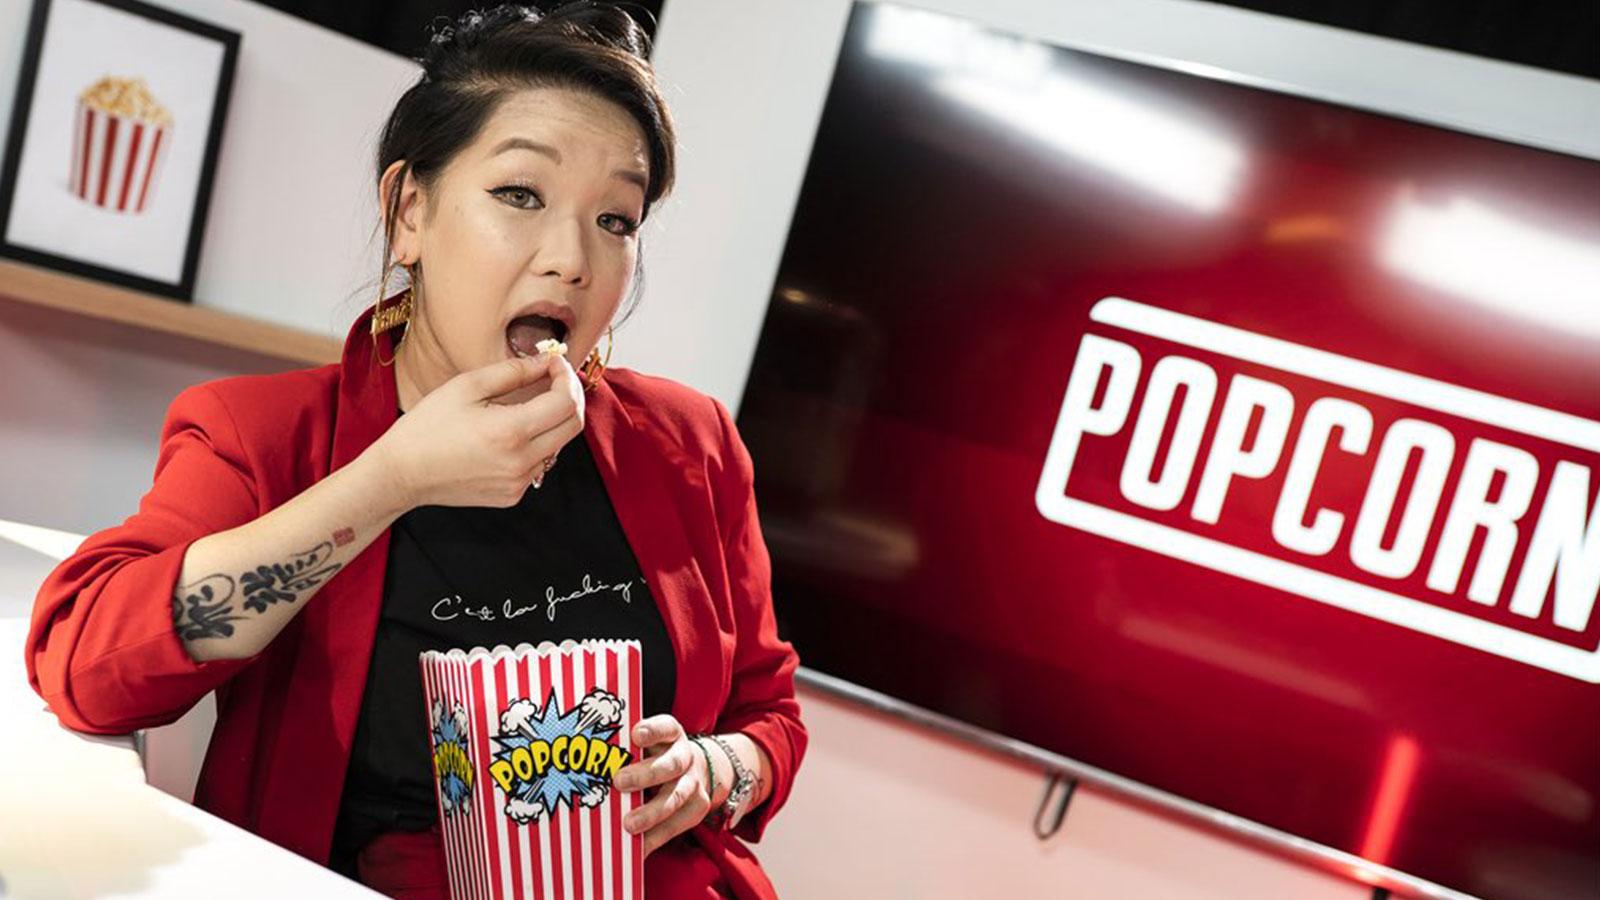 Marie Palot ne pourra assurer la prochaine édition de Popcorn